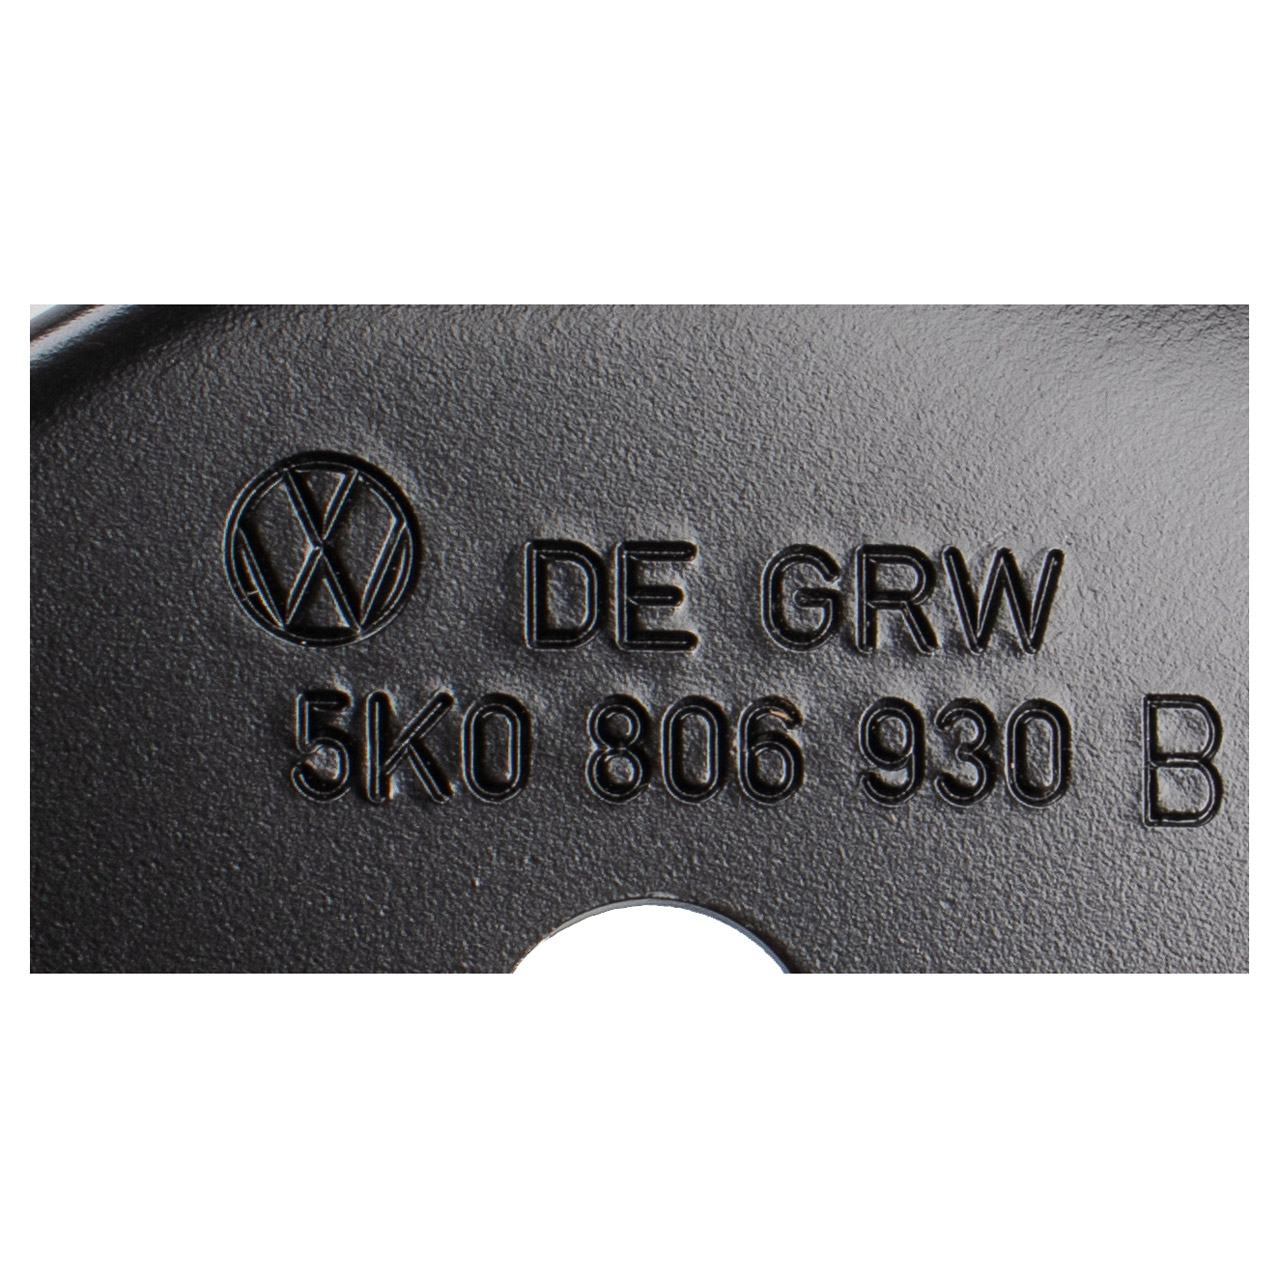 ORIGINAL VW Strebe Blech Halterung Schlossträger Golf 6 vorne rechts oben 5K0806930B